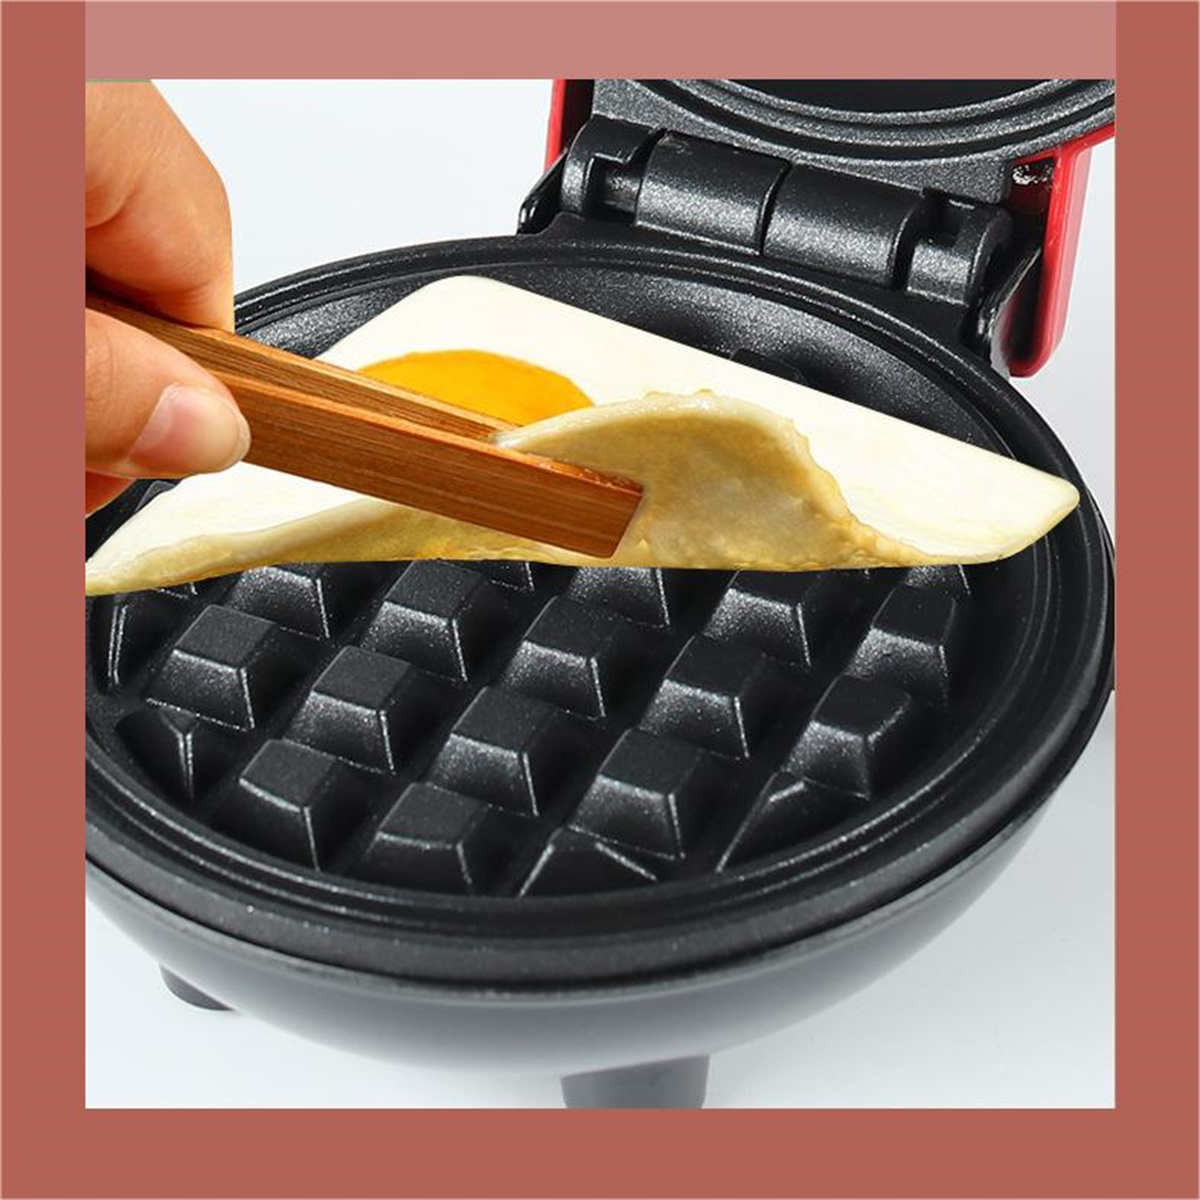 SYNTEK Zuhause Waffeleisen Multifunktional Rot Keksdose Waffeleisen Frühstücksmaschine Elektrisch Mini für Waffelmaschine